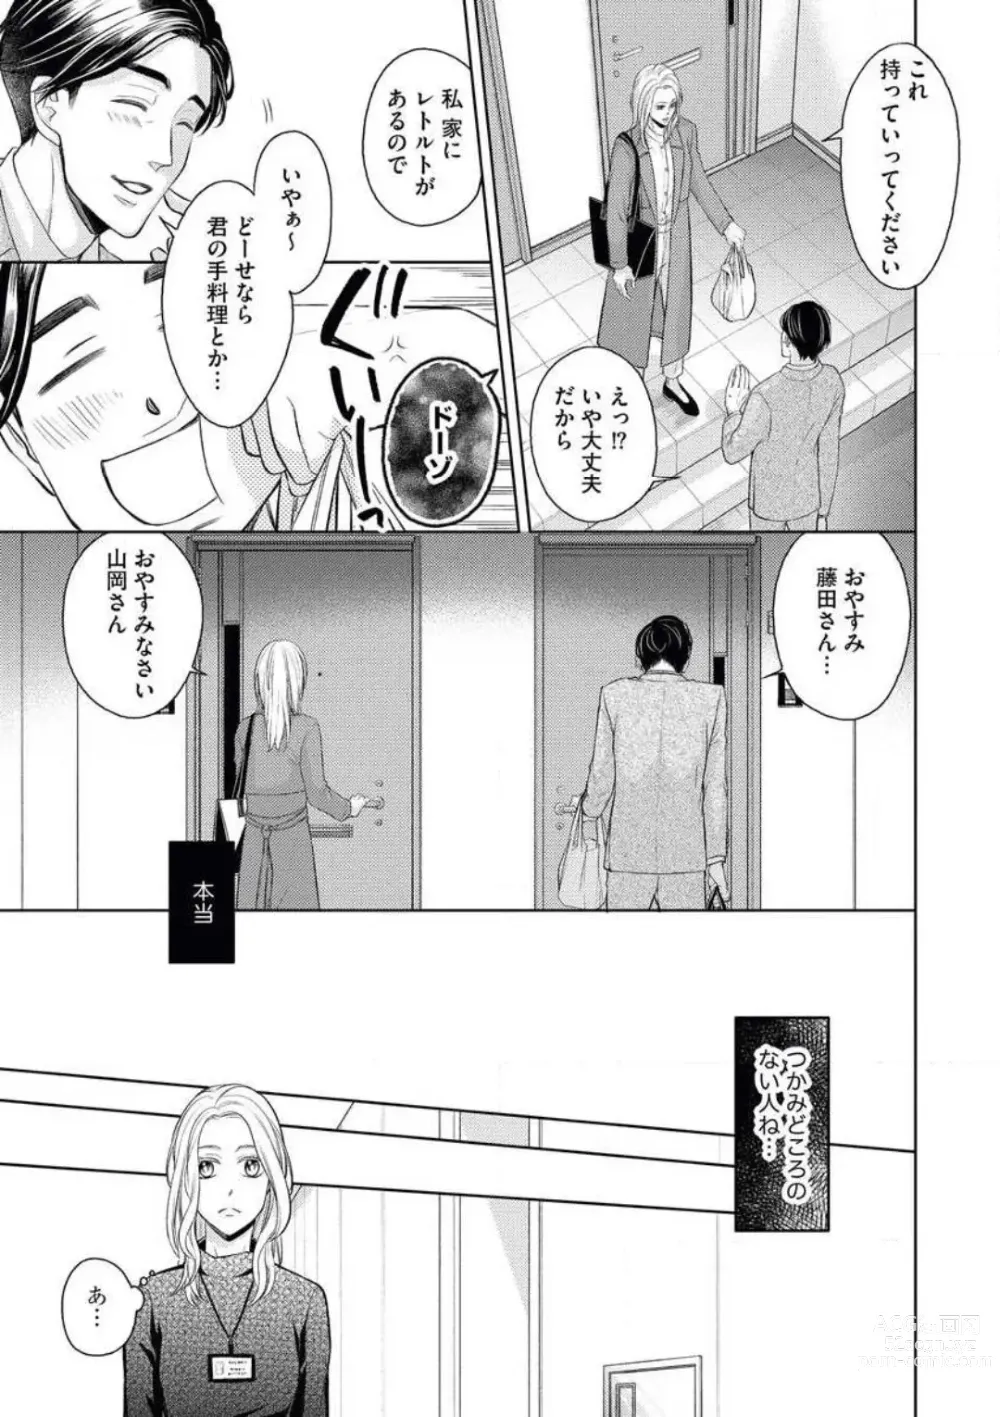 Page 13 of manga Mitsu Koi Maisonette